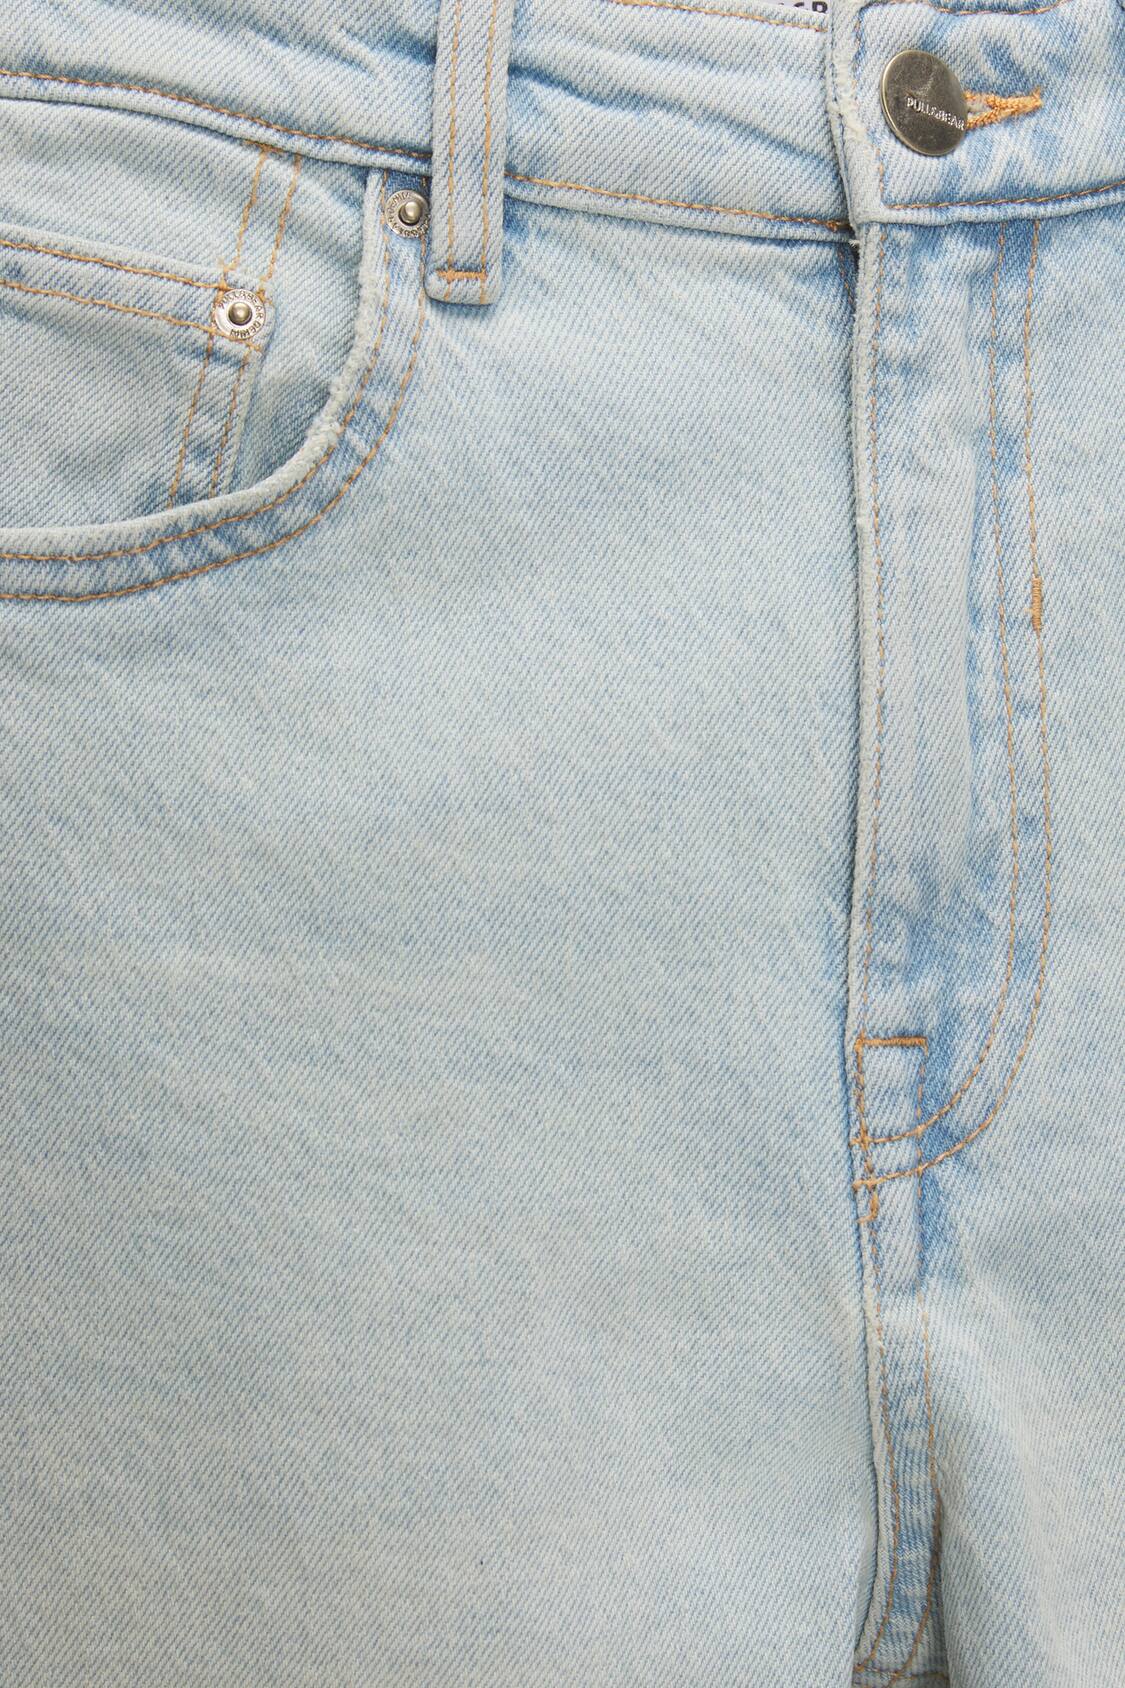 Closeup da cintura da mulher em jeans grandes de tamanho grande